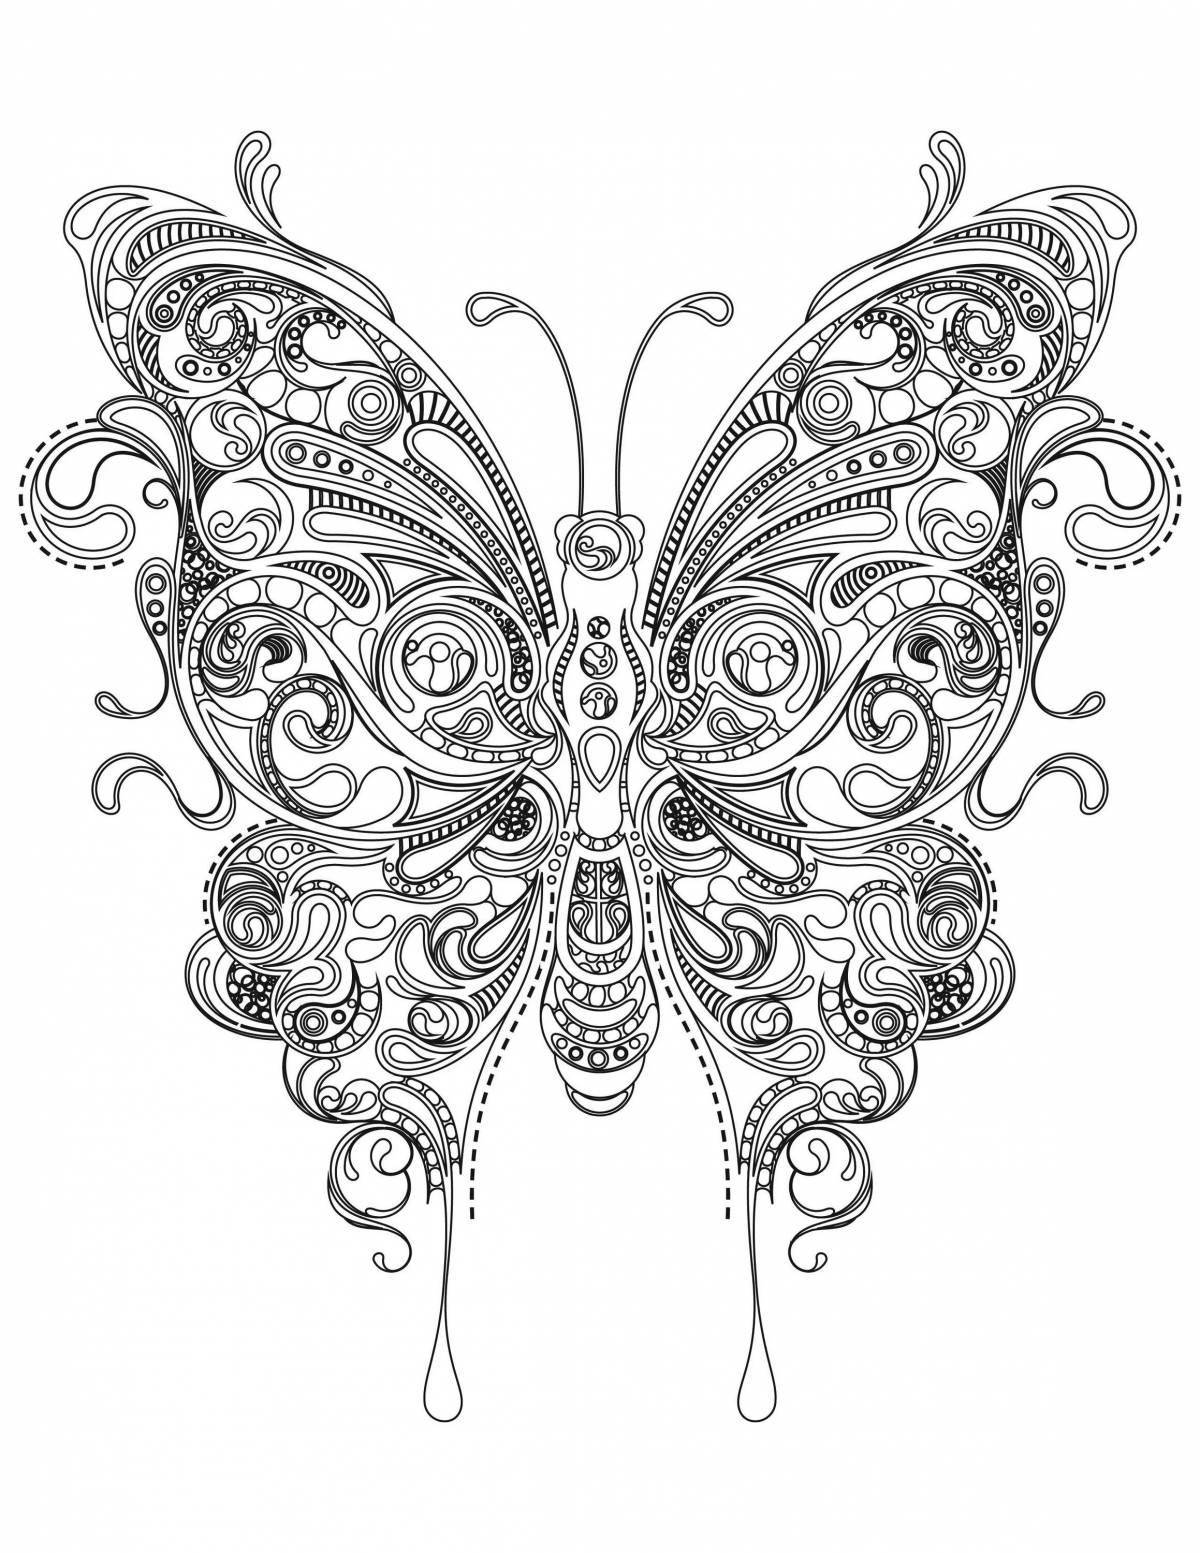 Раскраска экзотическая антистрессовая бабочка